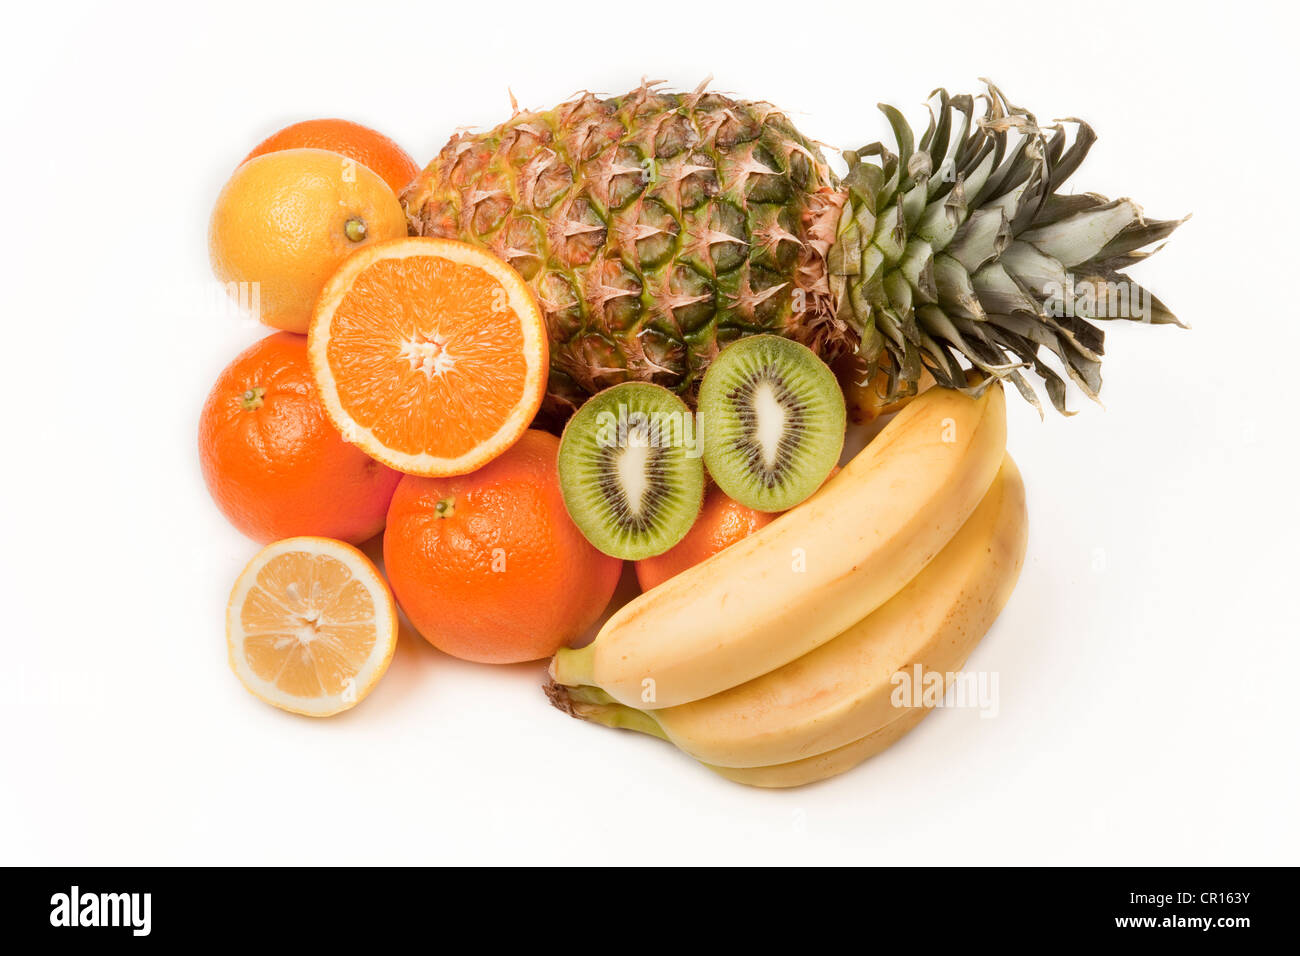 Assorted fruit, pineapple, kiwi fruit, oranges, lemon Stock Photo